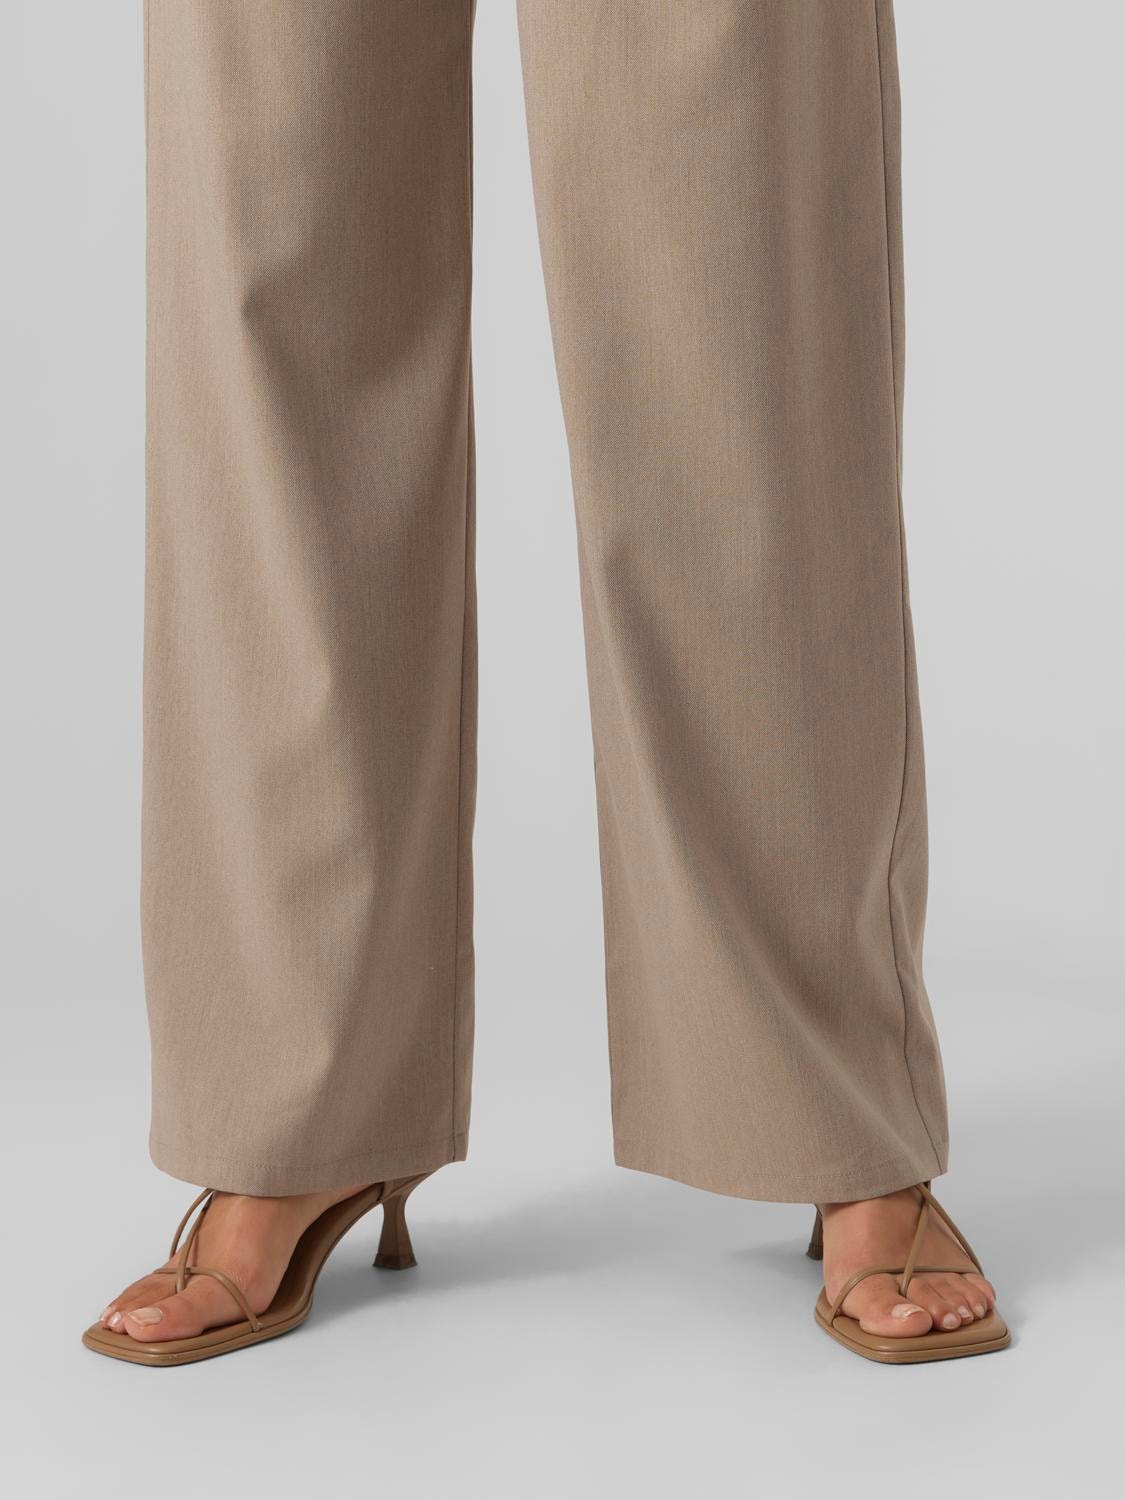 Vero Moda VMDAGNYALBA Pantaloni -Brown Lentil - 10291886